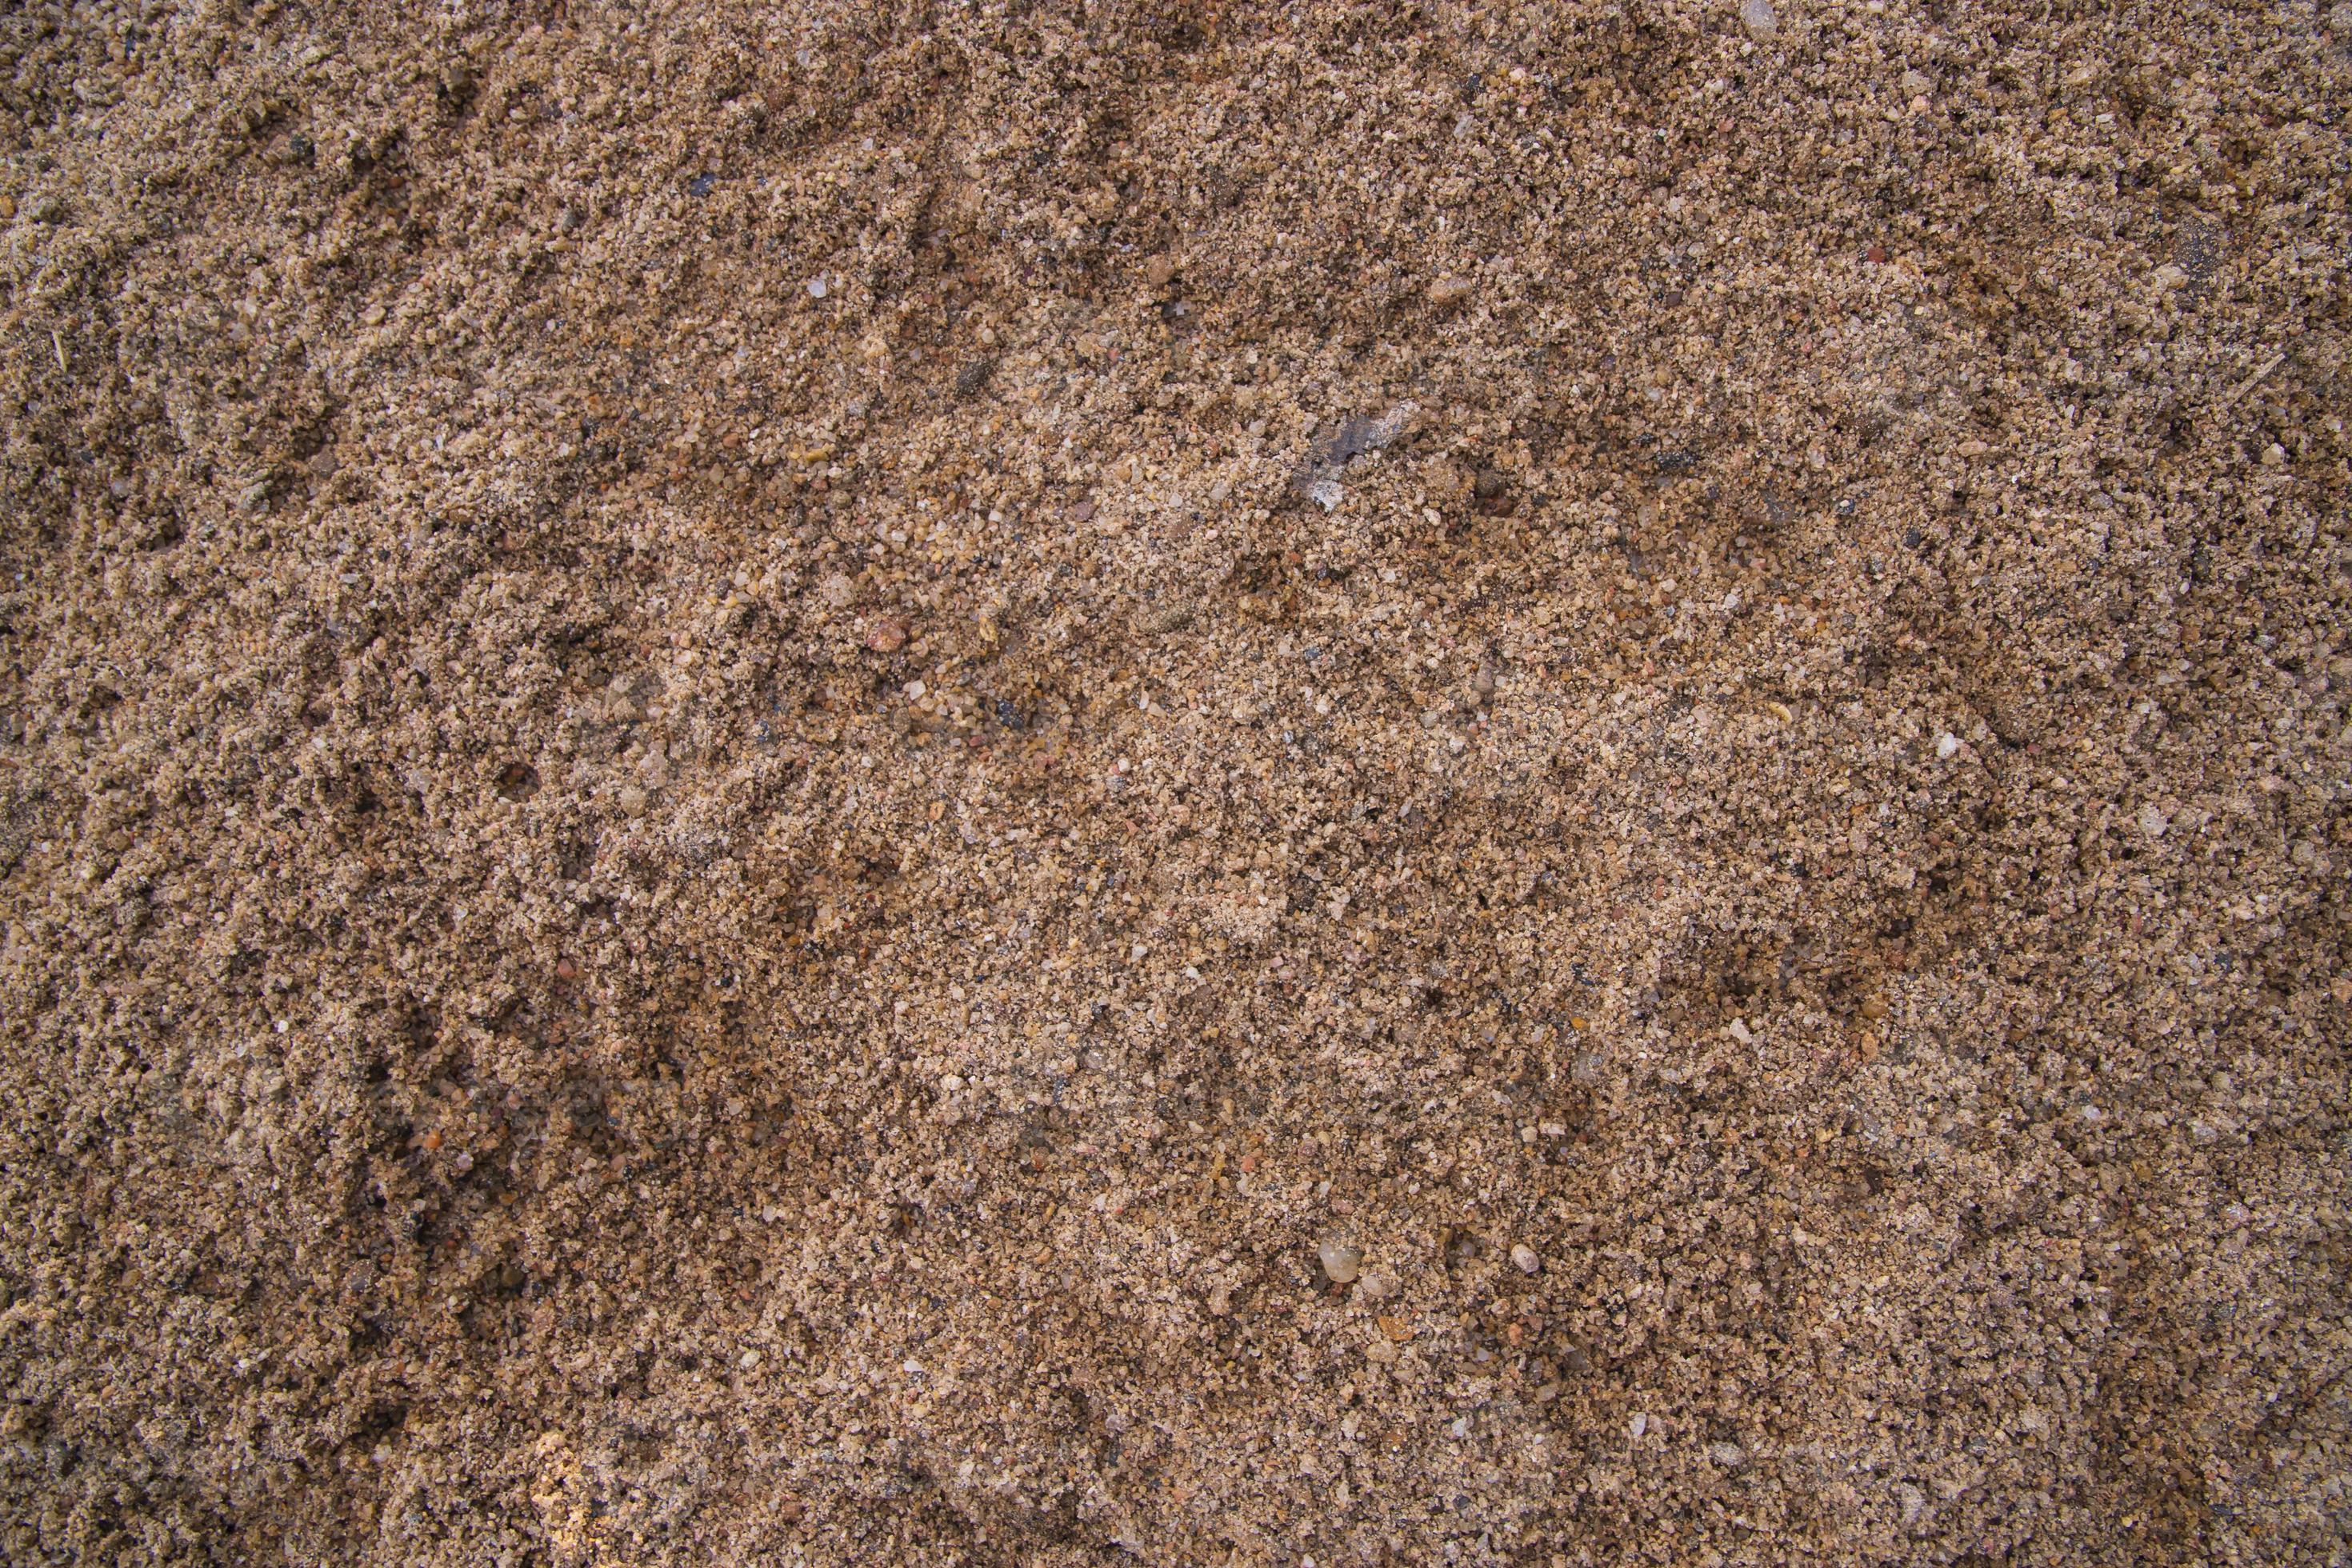  Braune Hintergrundbild 2940x1960. Braune Baustein Sand Abstrakte Textur Kann Als Hintergrundbild Verwendet Werden 18910405 Stock Photo Bei Vecteezy